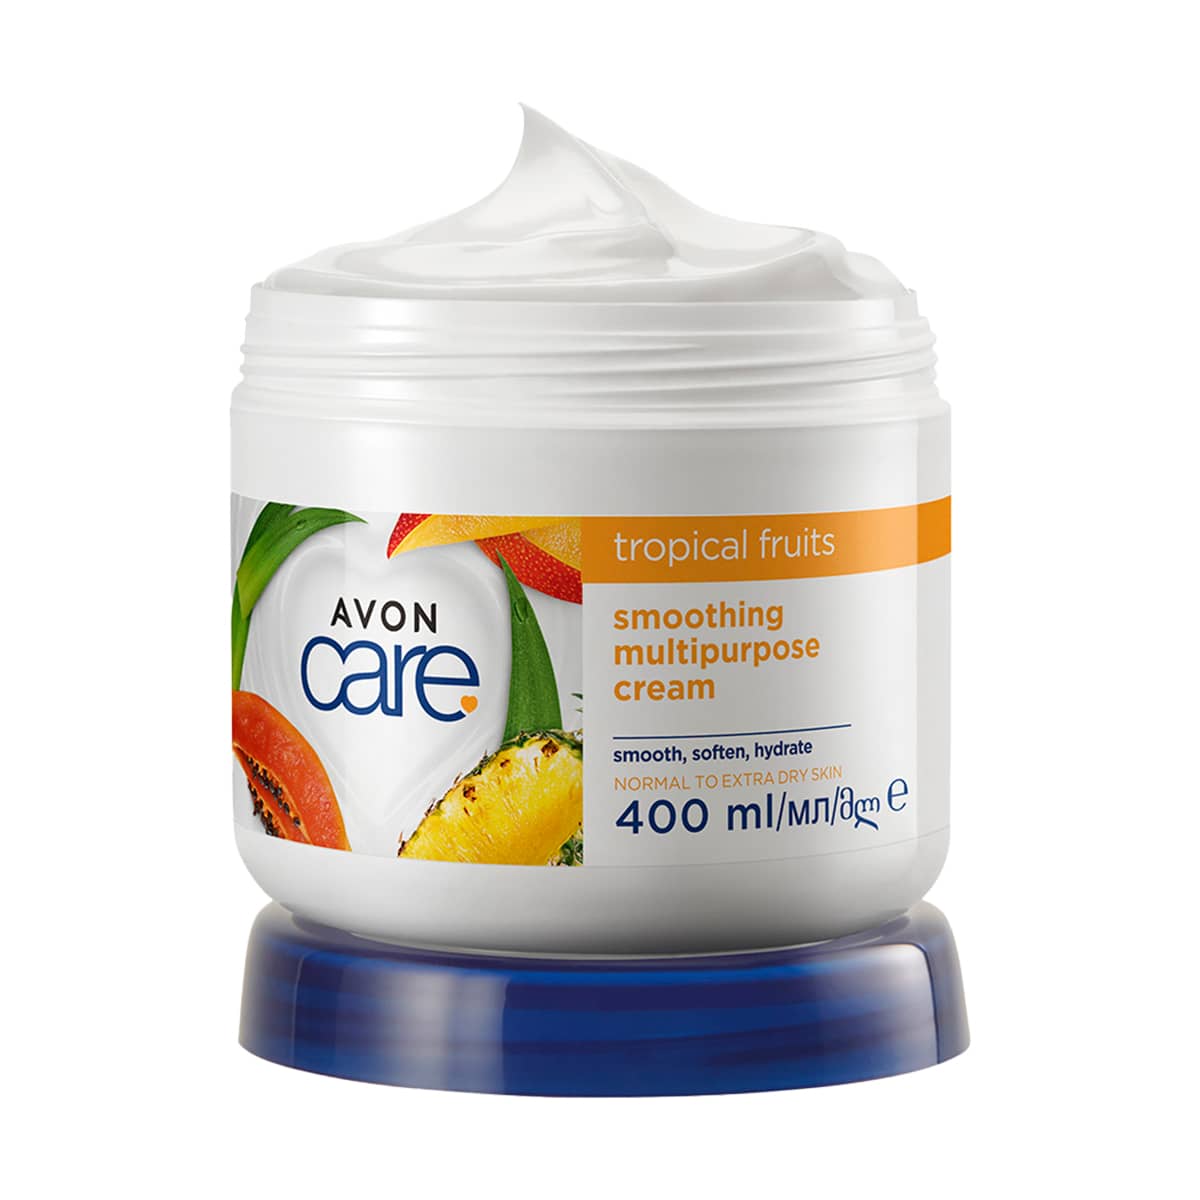 Avon Care Trocal Fruits Multipurpose Cream 400ml